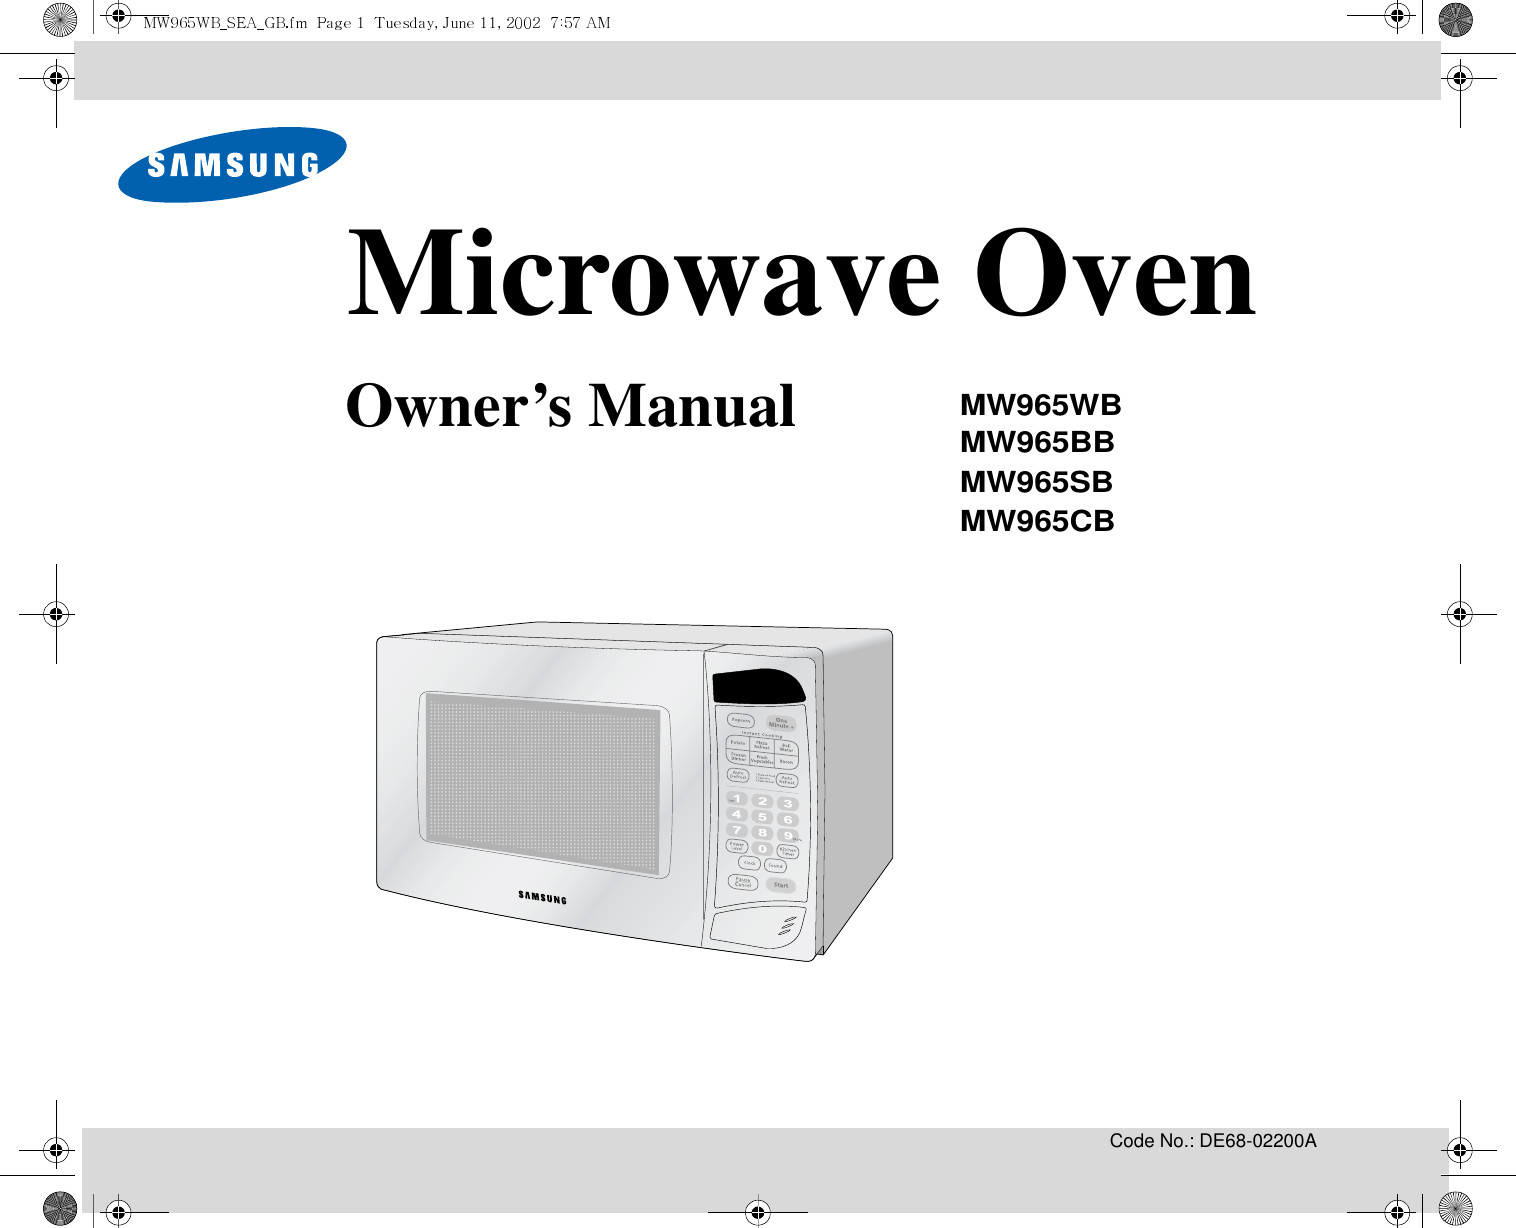 Code No.: DE68-02200AMicrowave OvenOwner’s ManualMW965WBMW965BBMW965SBMW965CB